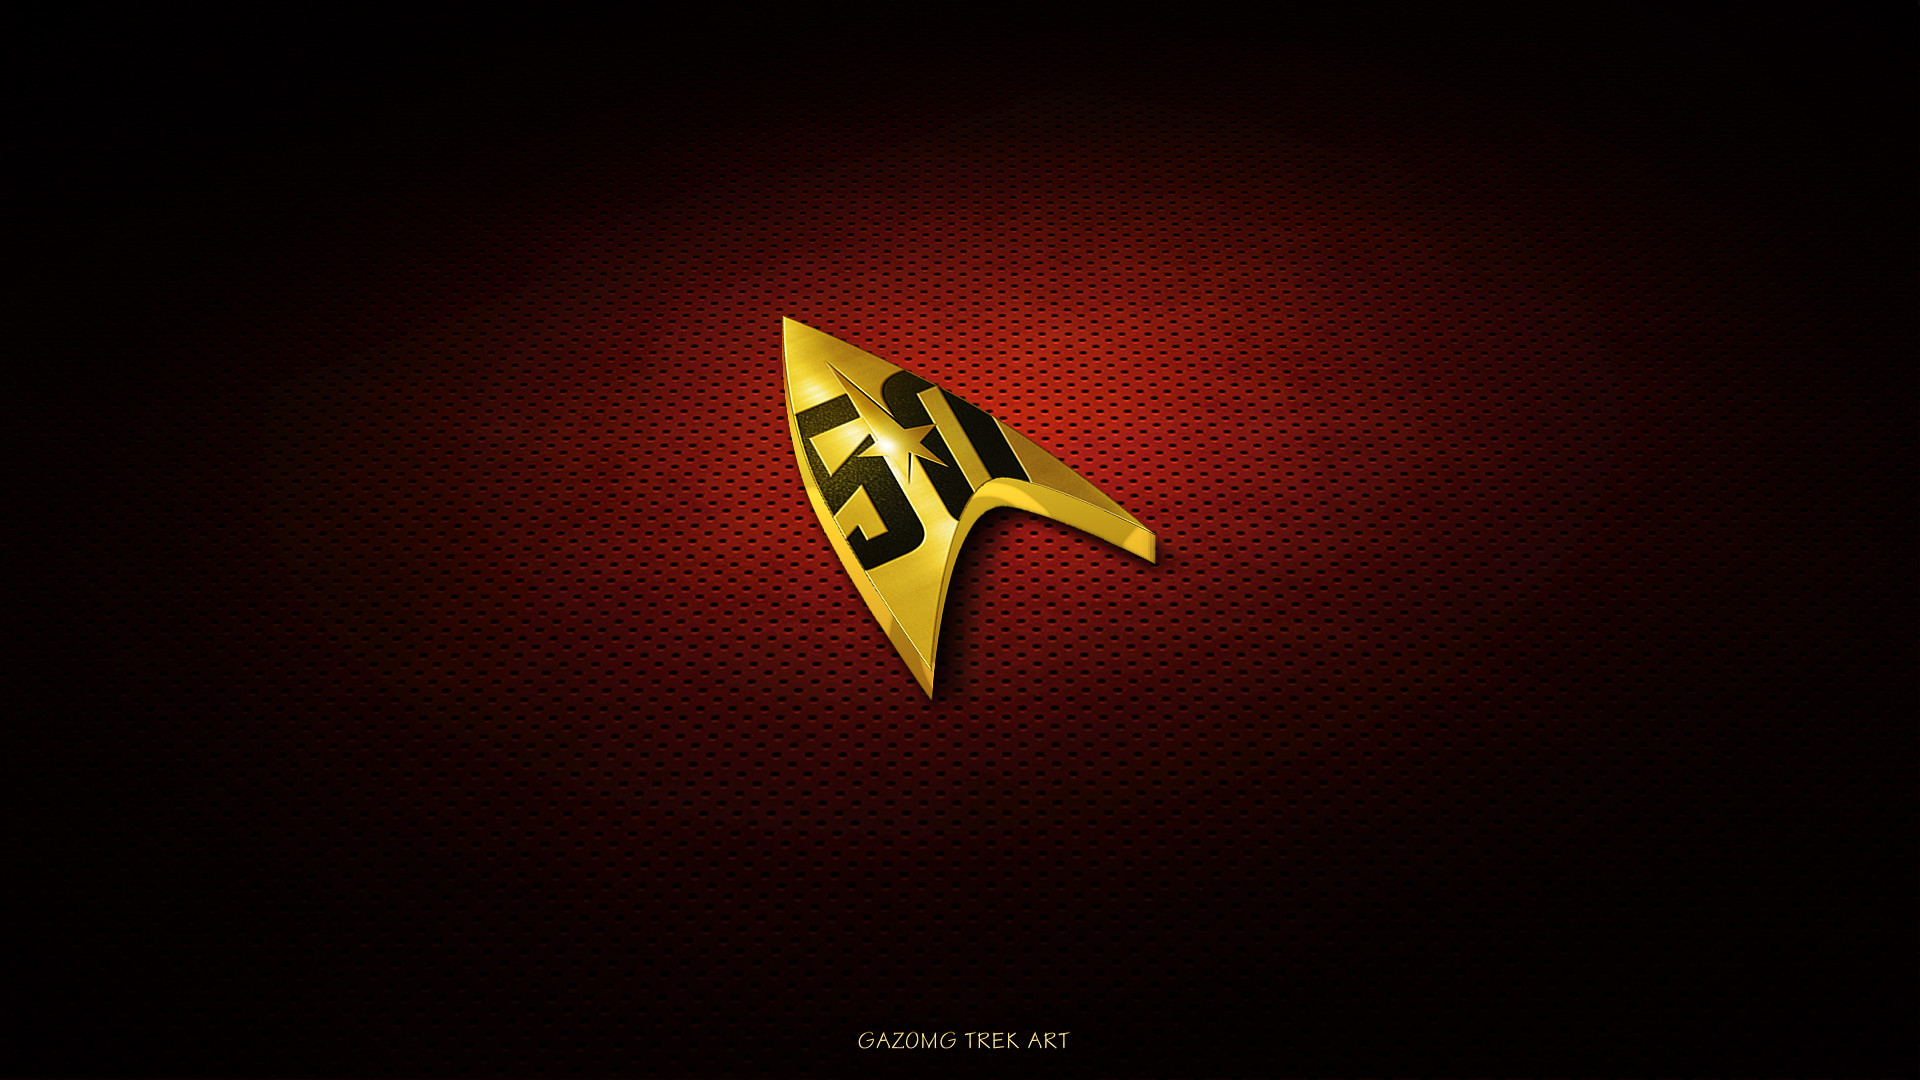 1920x1080 Star Trek Logo Wallpaper #4 - 50th Anniversary by gazomg on DeviantArt